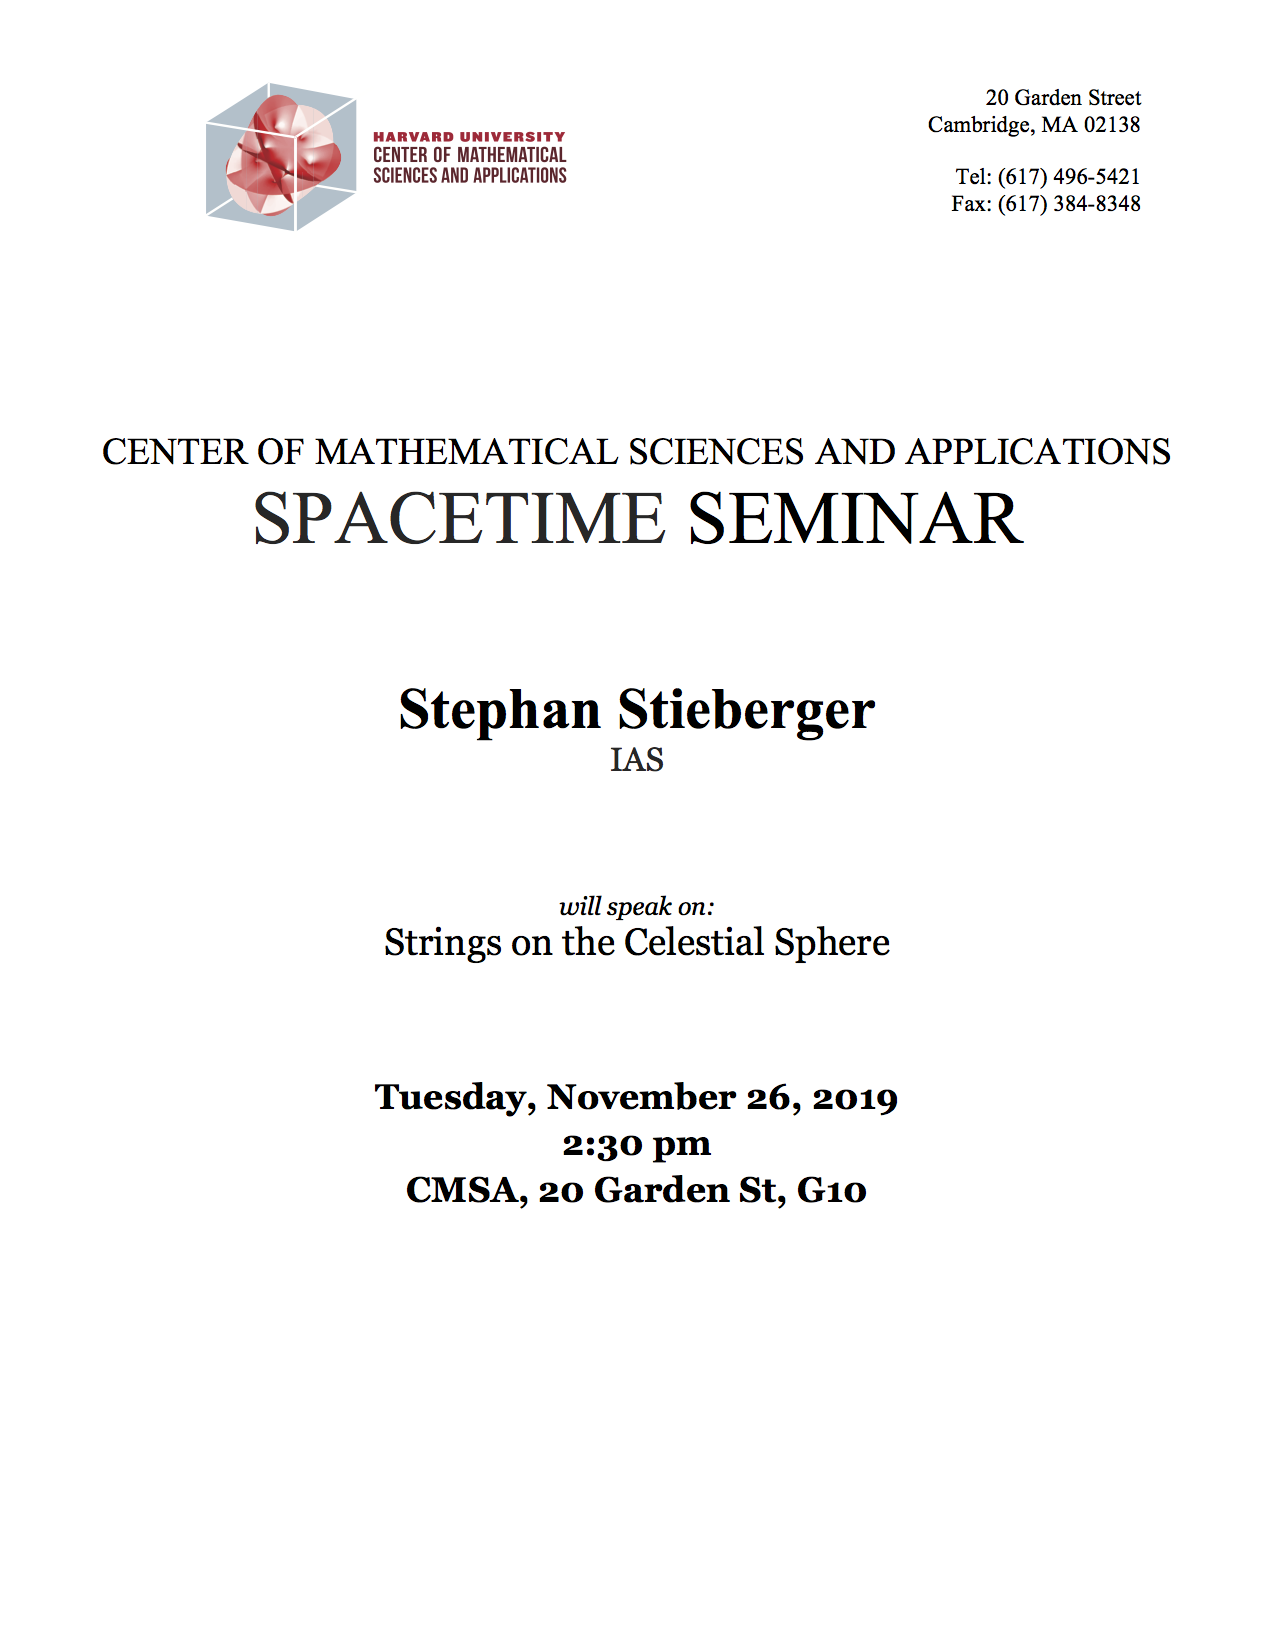 11/26/2019 Spacetime Seminar